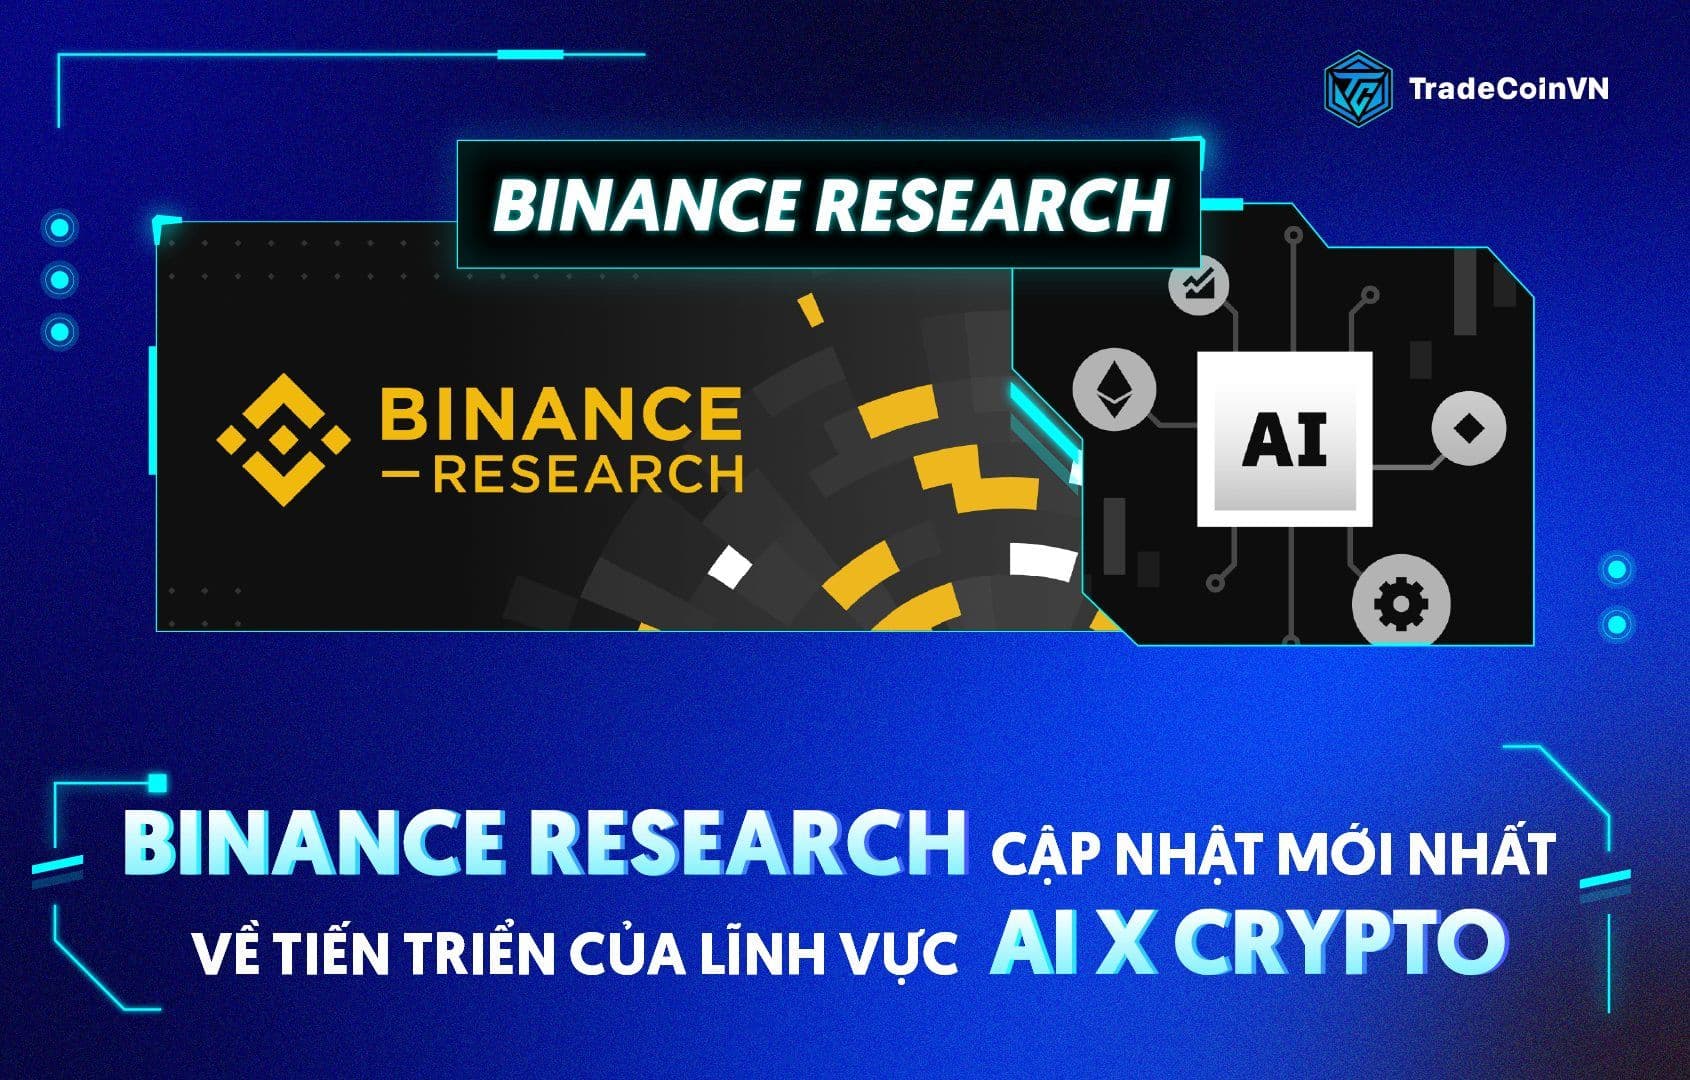 Binance Research: Cập nhật mới nhất về tiến triển của lĩnh vực AI x Crypto